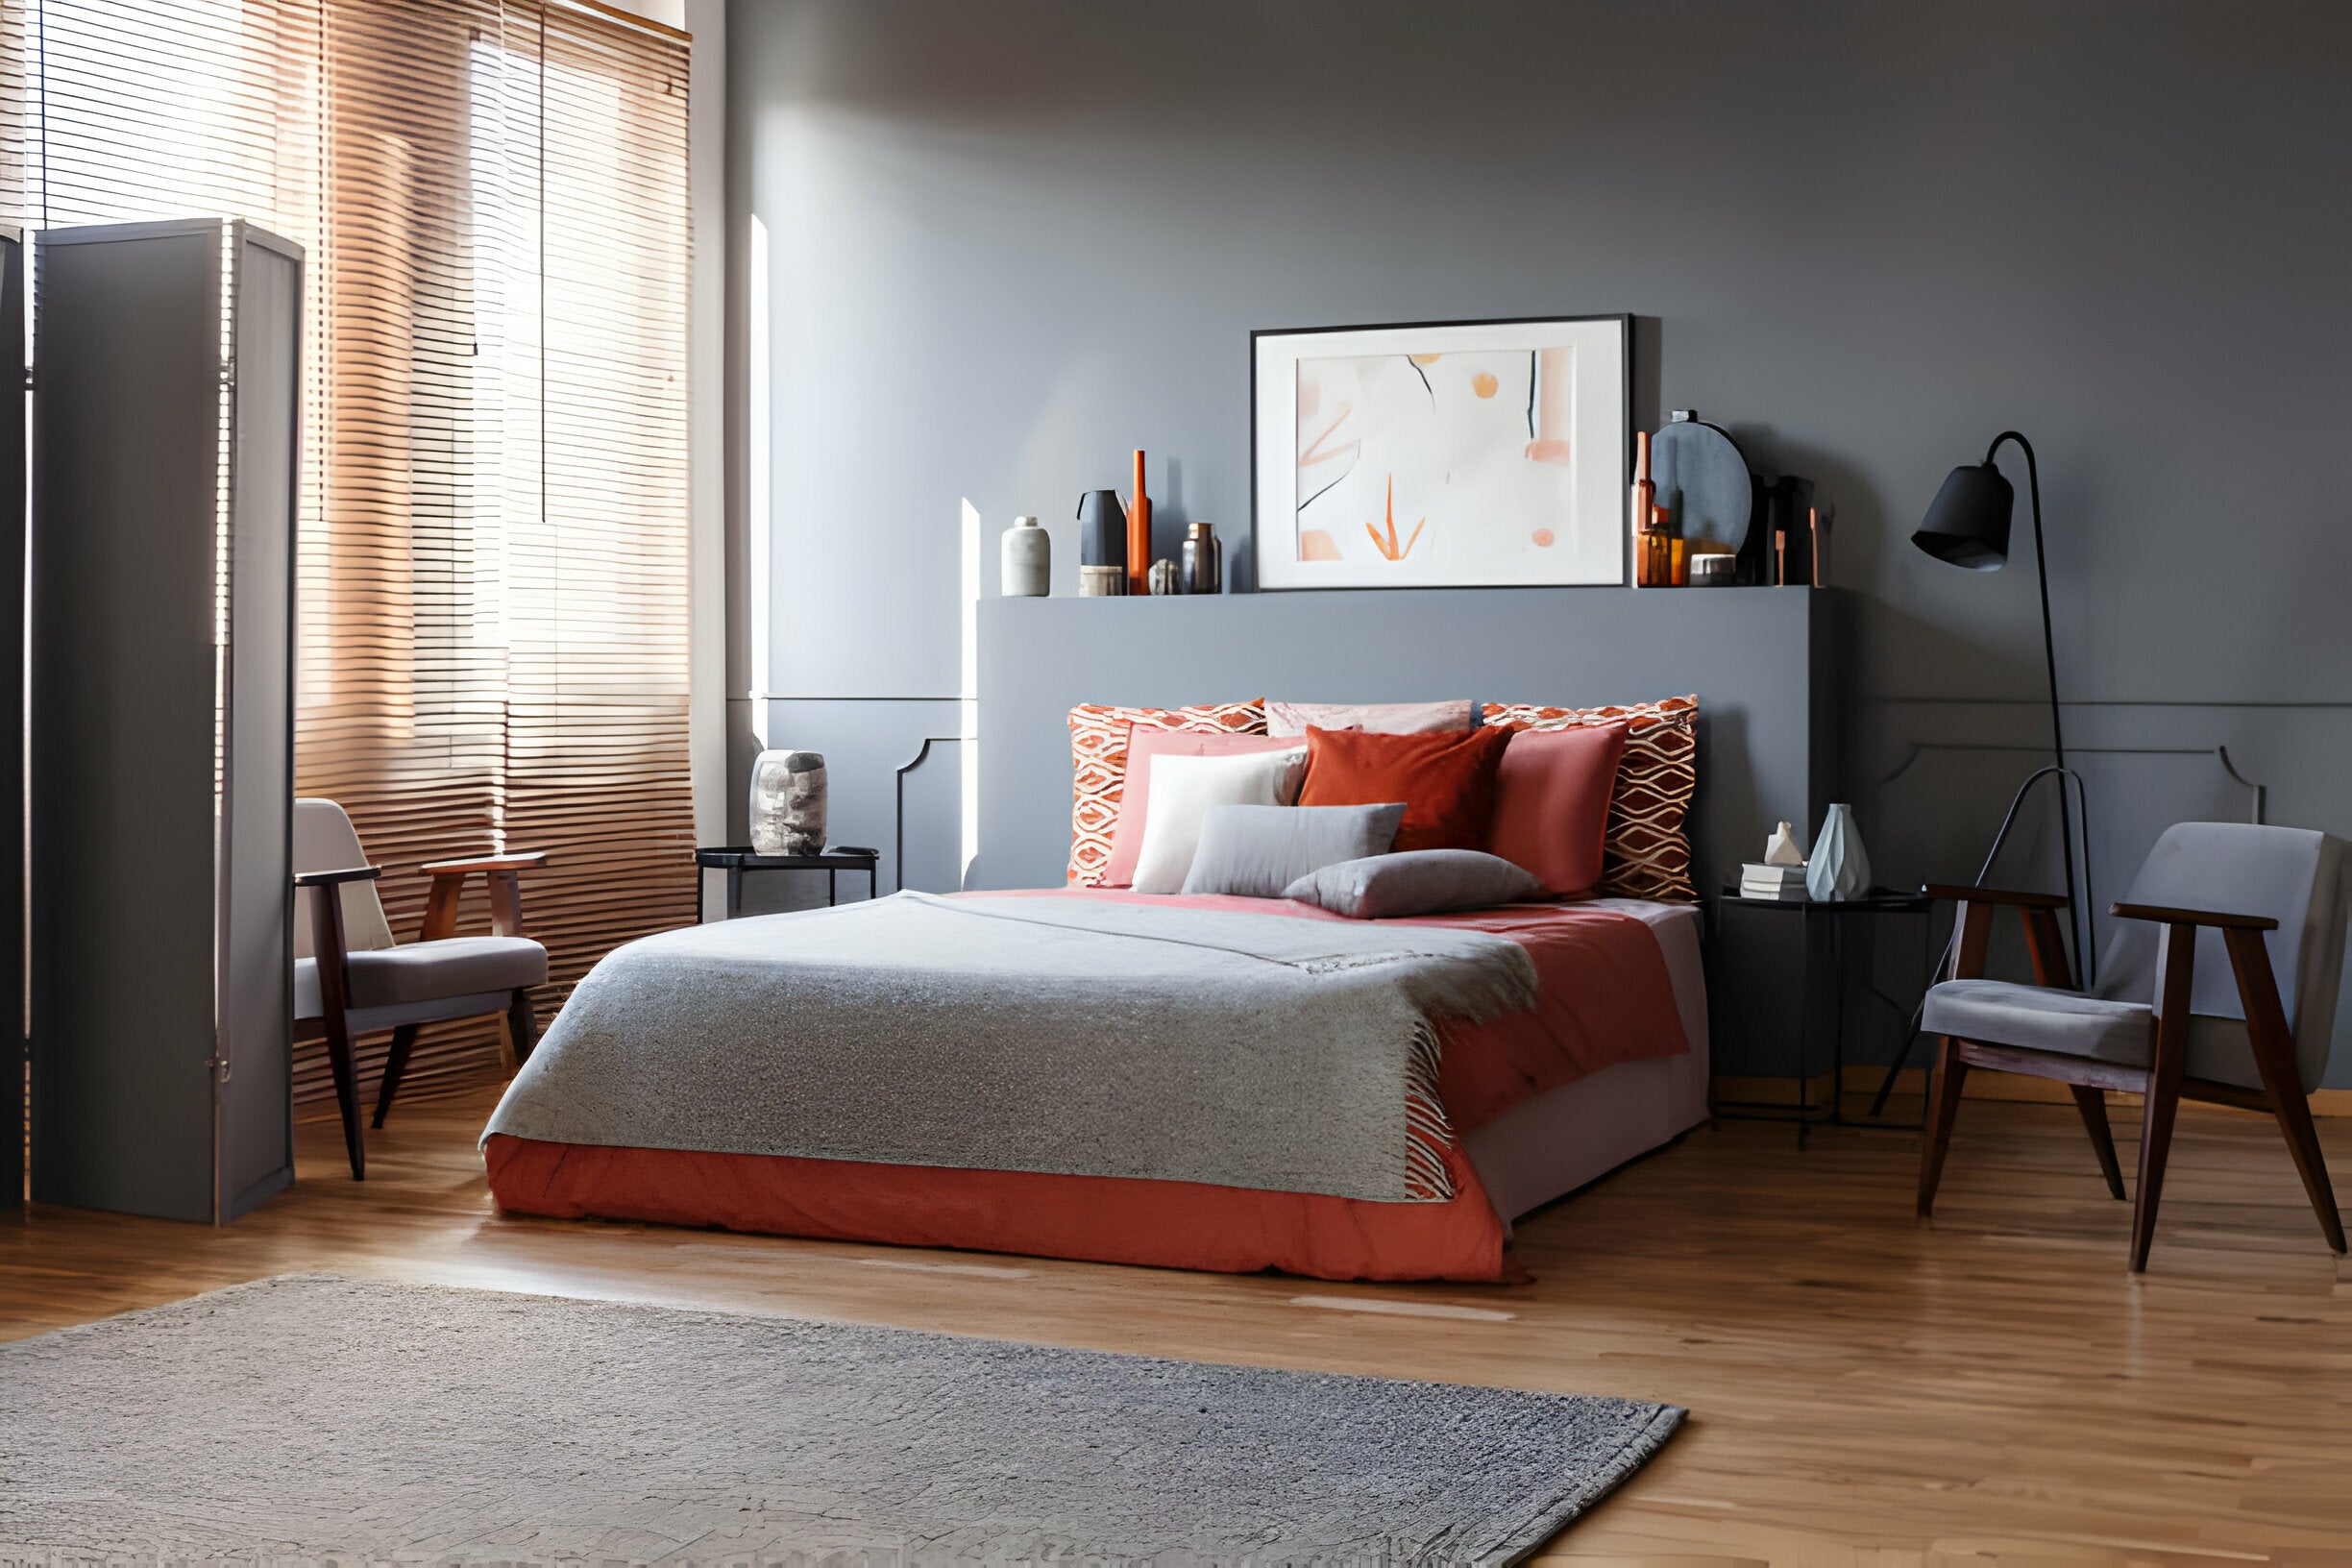 Best Split King Adjustable Bed Sheets: Top Options